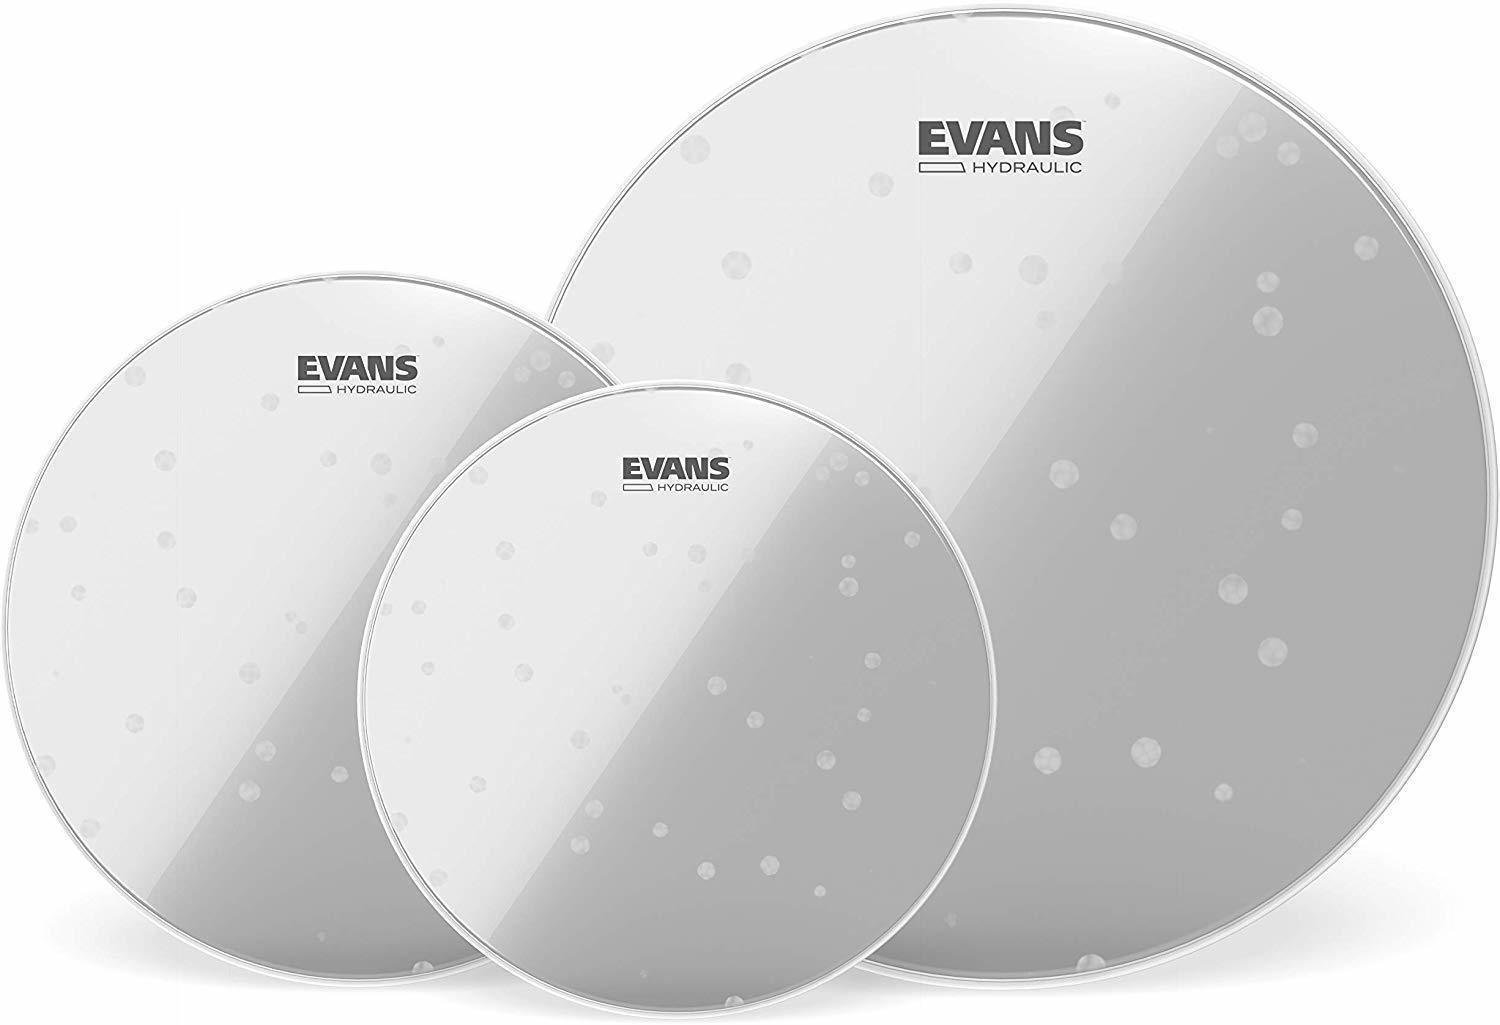 Fellsatz für Schlagzeug Evans ETP-HYDGL-S Hydraulic Glass Standard Fellsatz für Schlagzeug